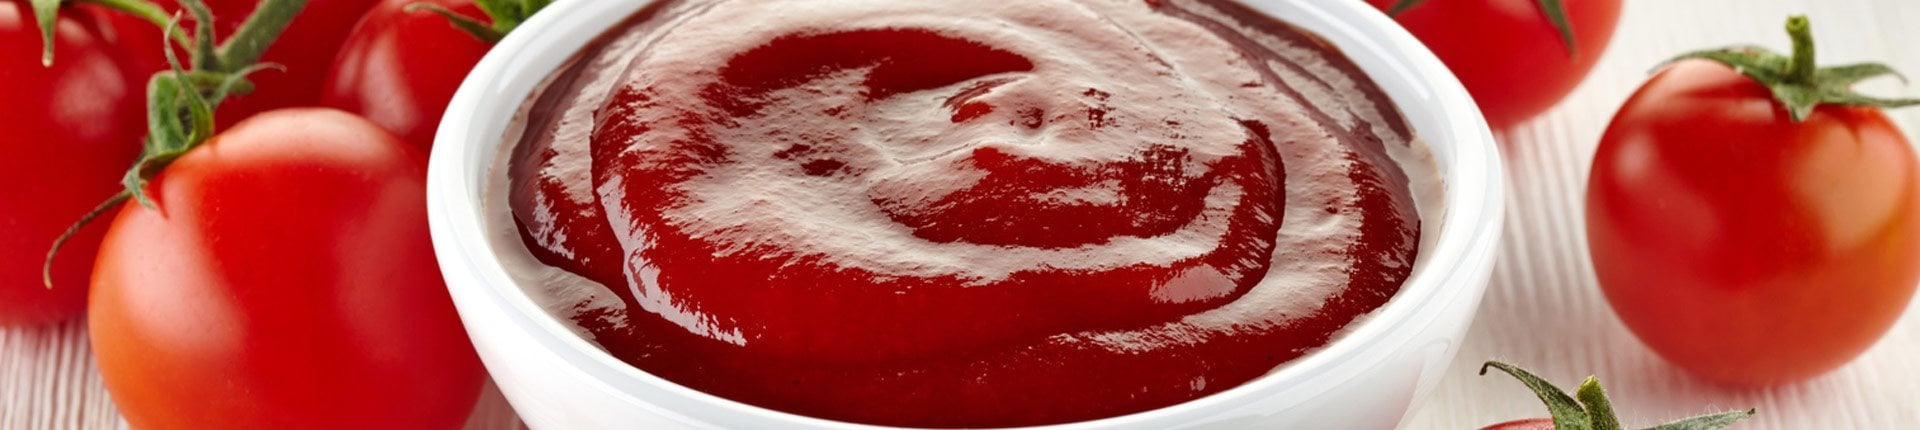 Czy ketchup jest zdrowy, czy szkodliwy?